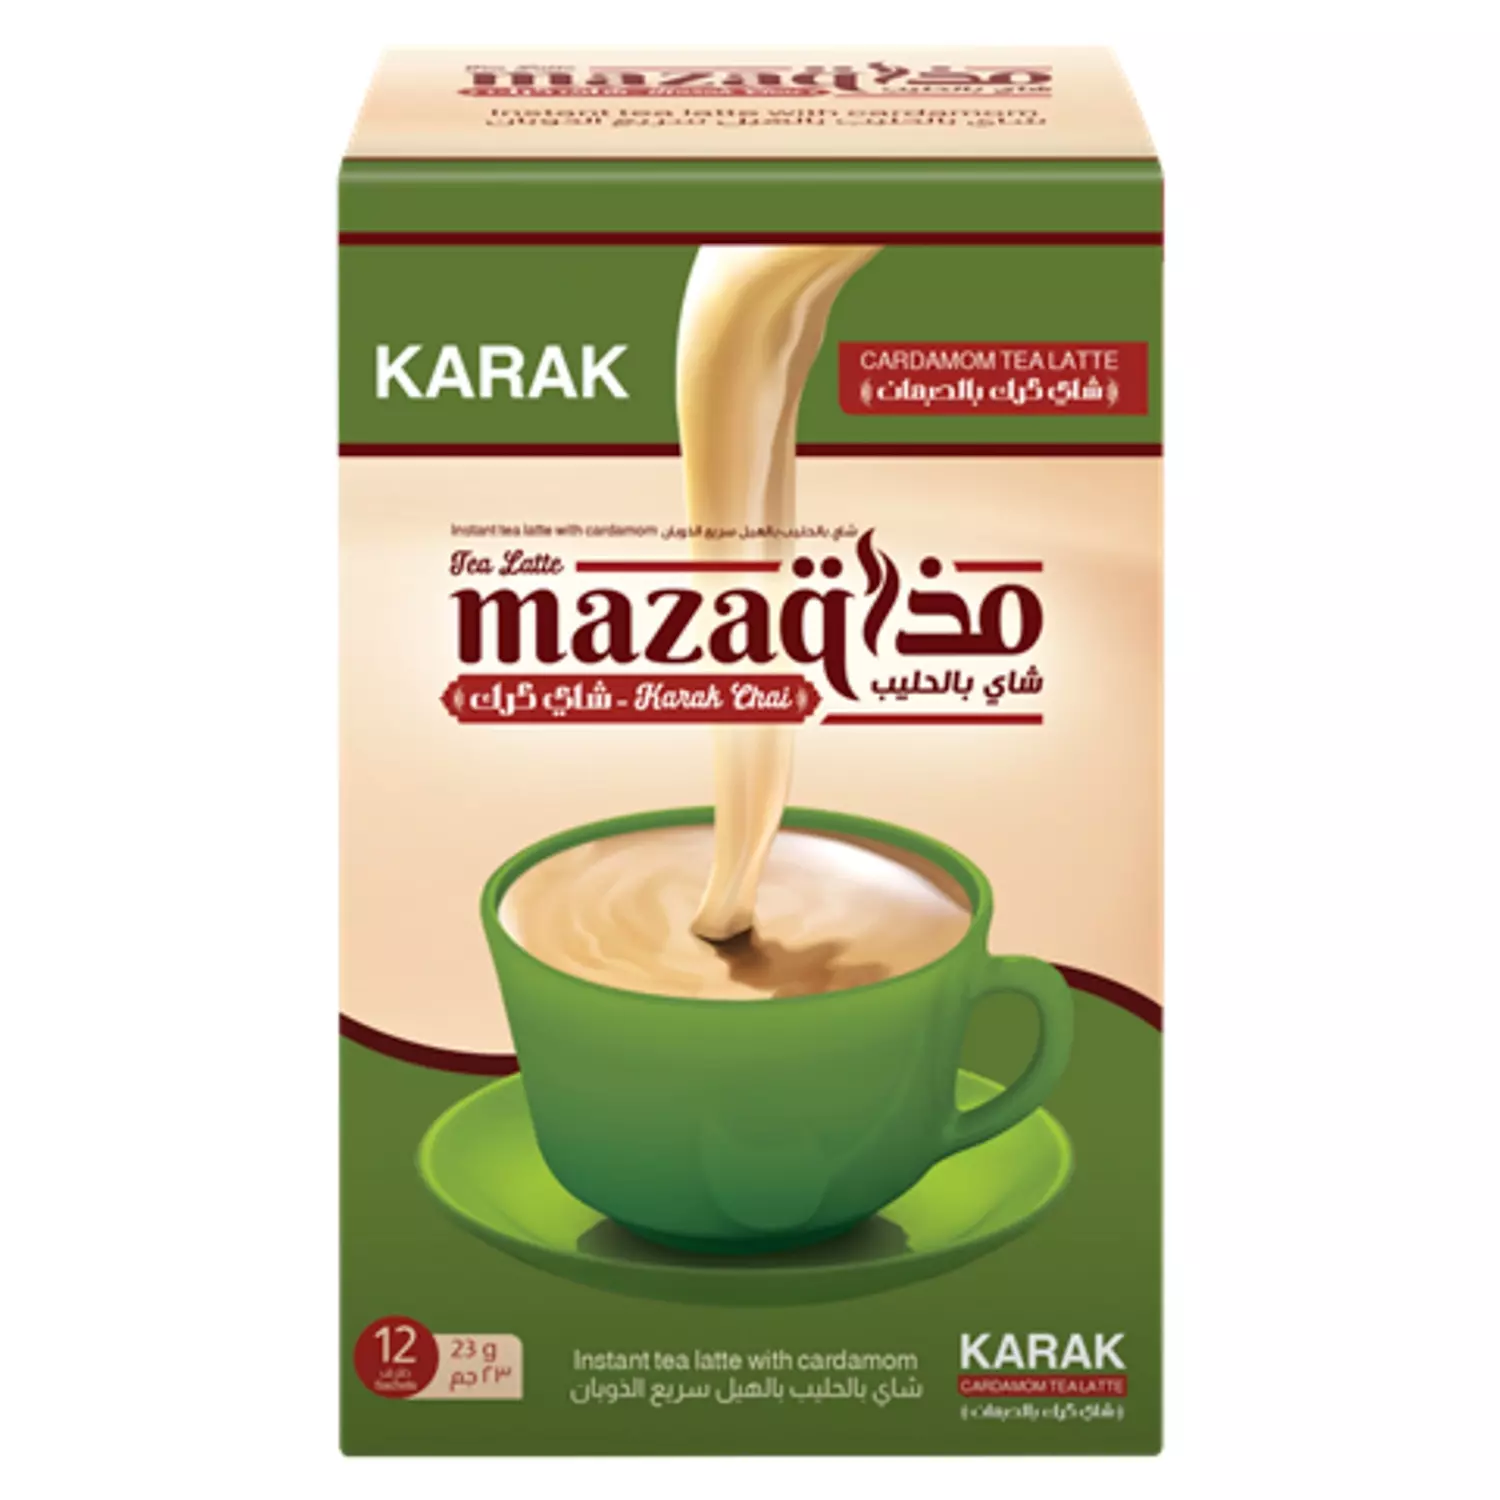 Mazaq karak tea sachets box -12 sachet hover image